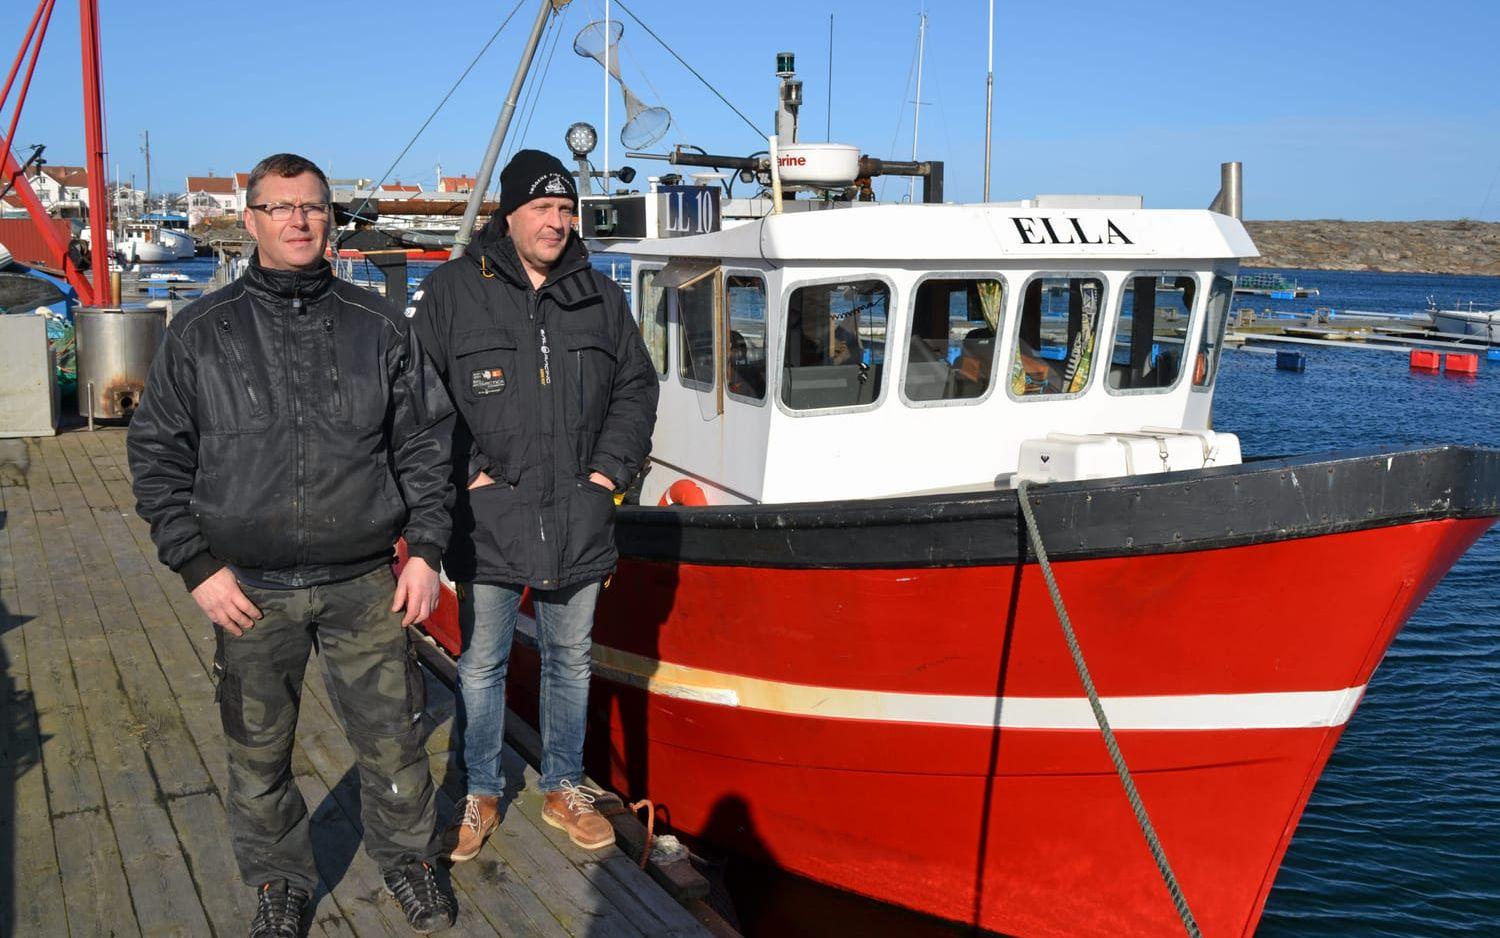 Nya regler slår undan benen på fiskarbröderna Patrik och Rikard Berndtzen i Hasselösund. Hemma på bryggan står de djupt besvikna, skuldsatta och irriterade. Foto: Ulf Blomgren